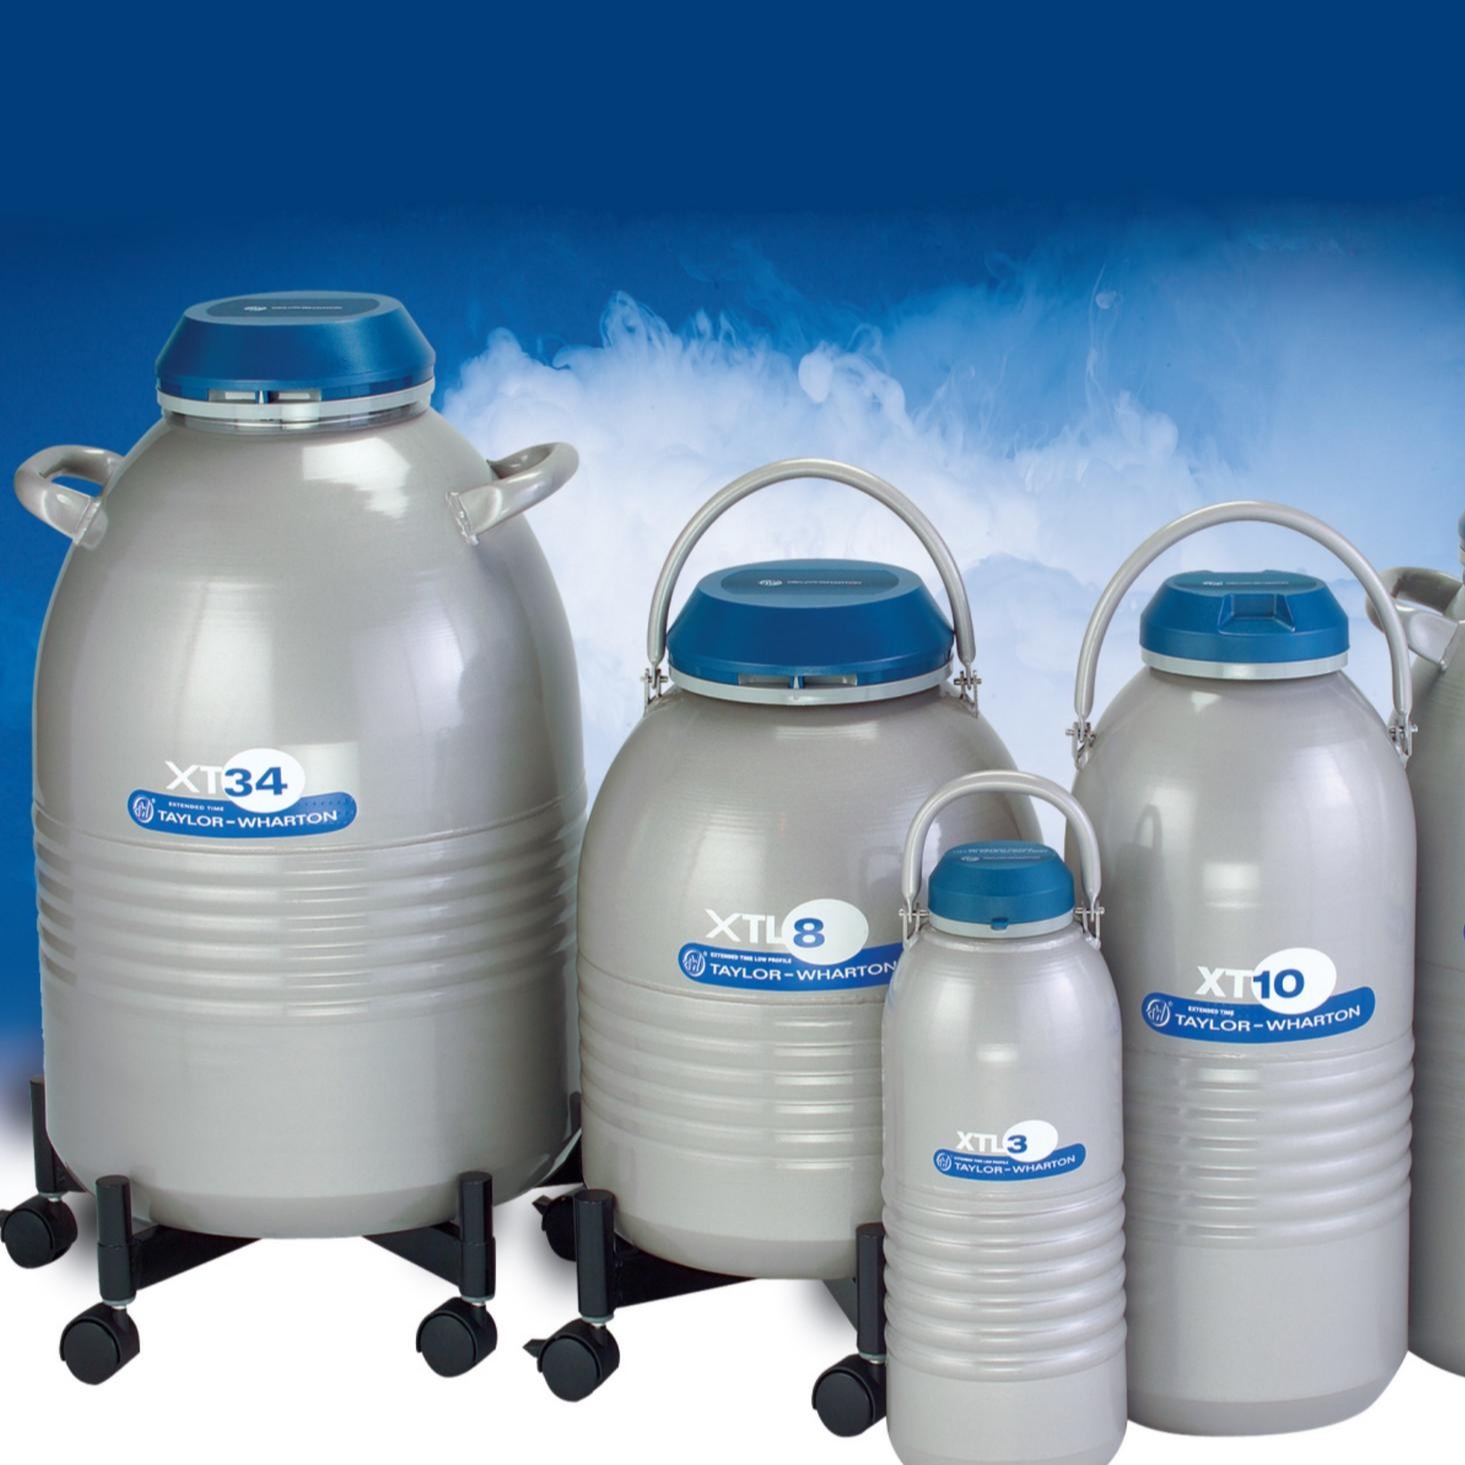 泰来华顿Worthington XTL8便携式液氮罐,液氮容器,生物容器 泰莱华顿talorwhaton